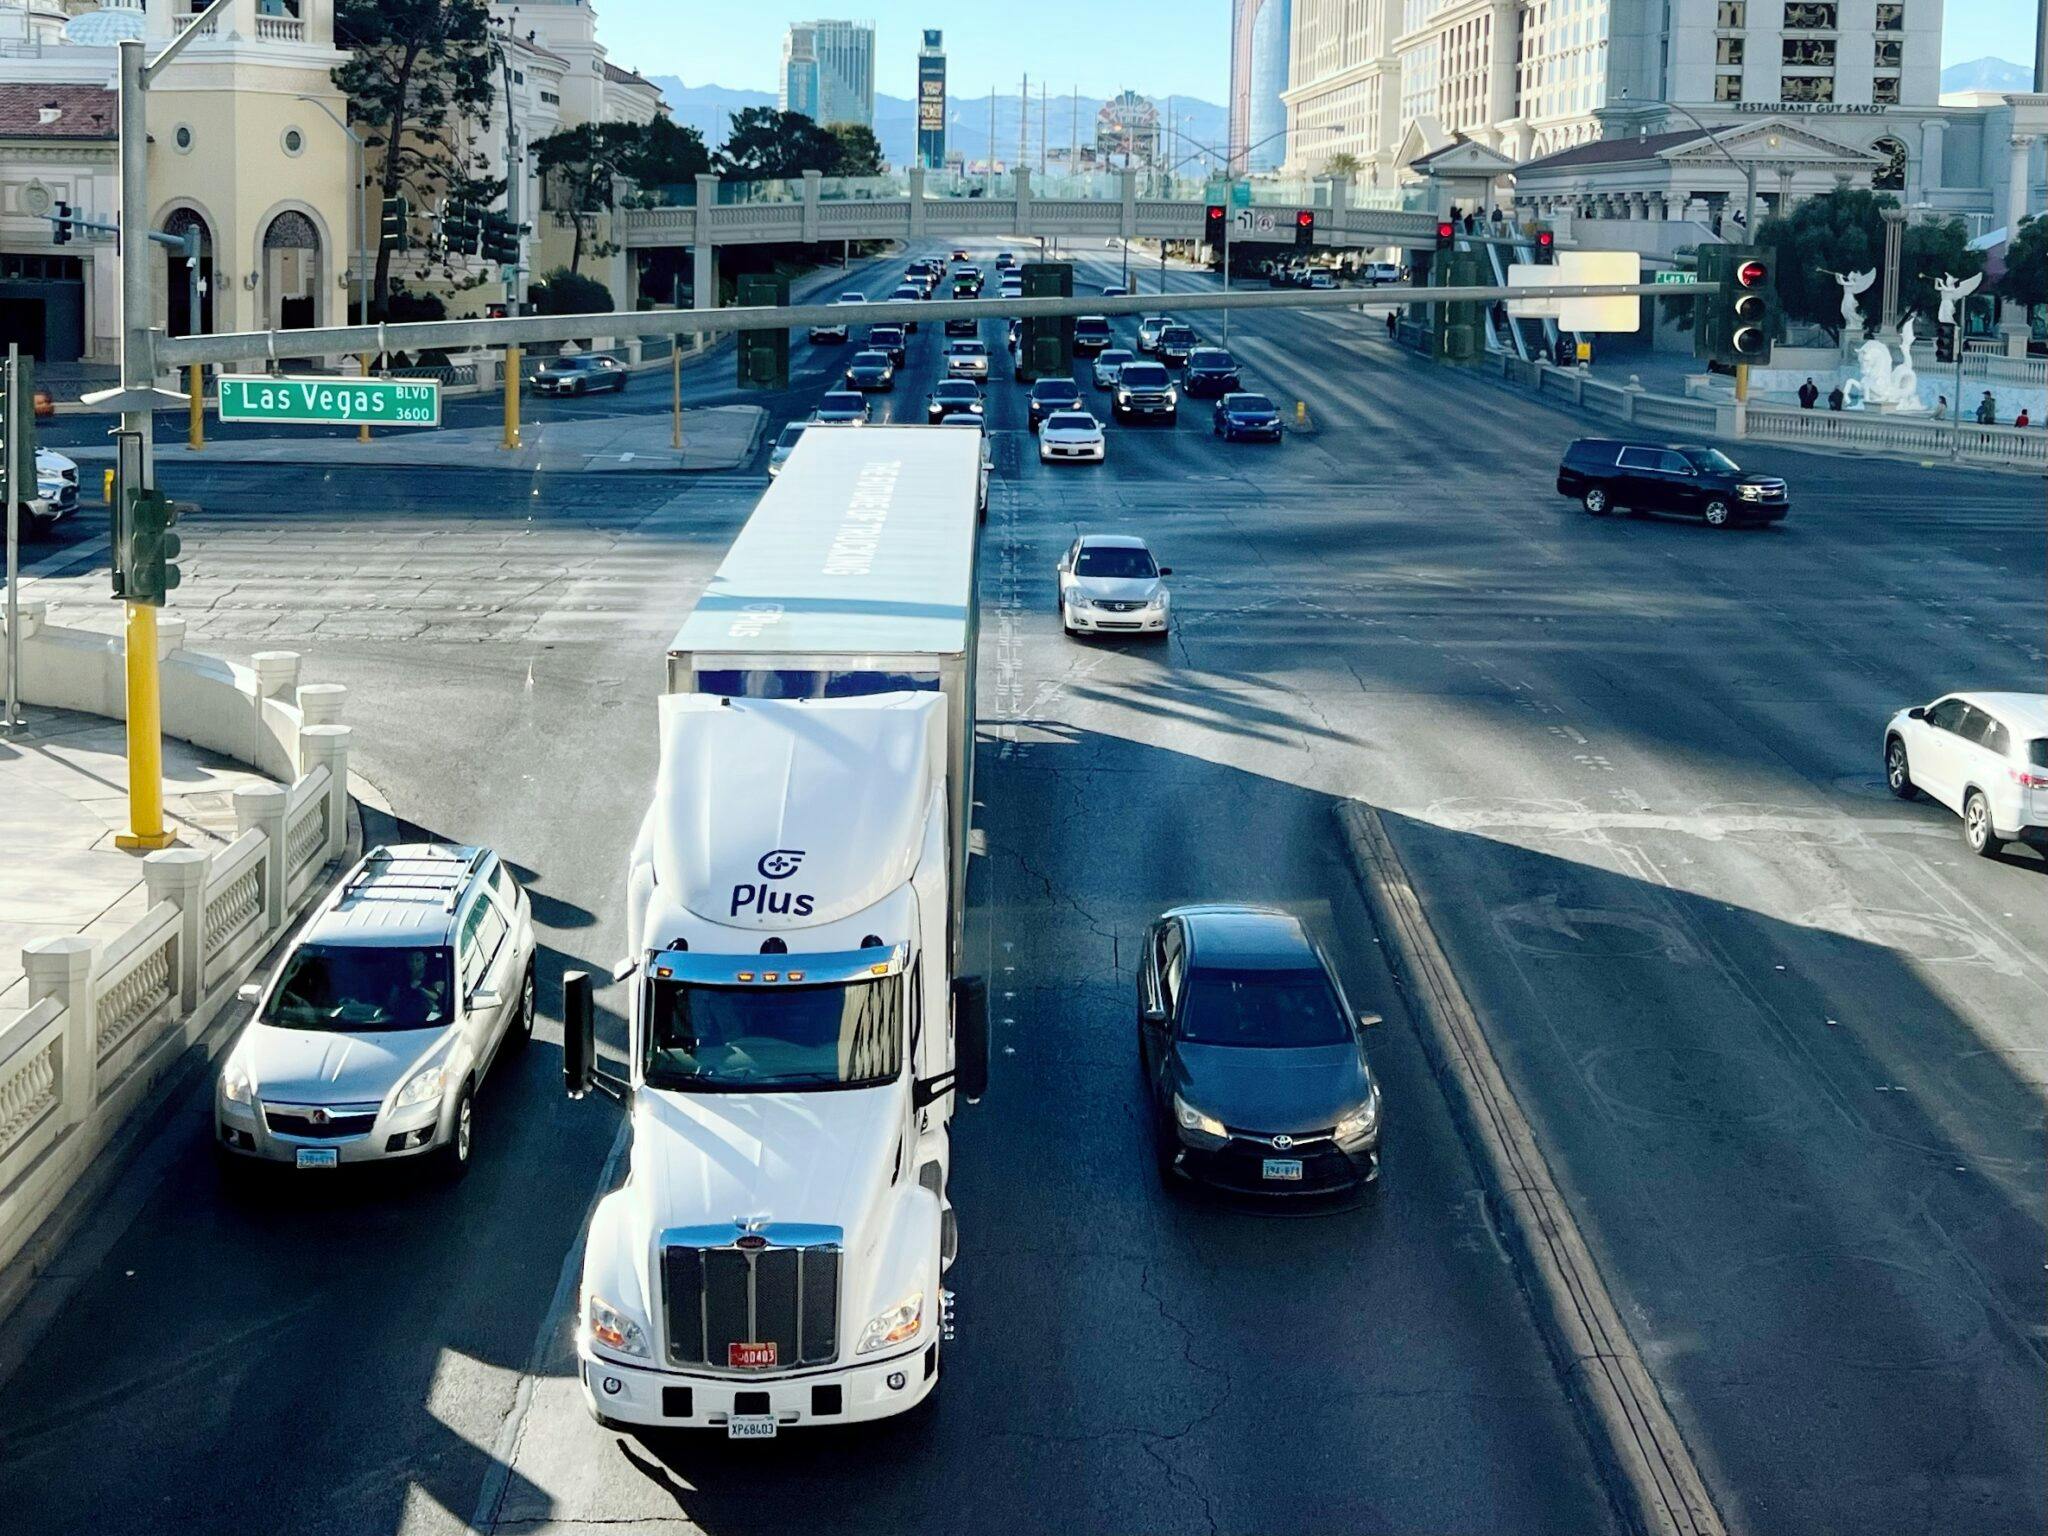 Autonomous Plus truck driving through city intersection